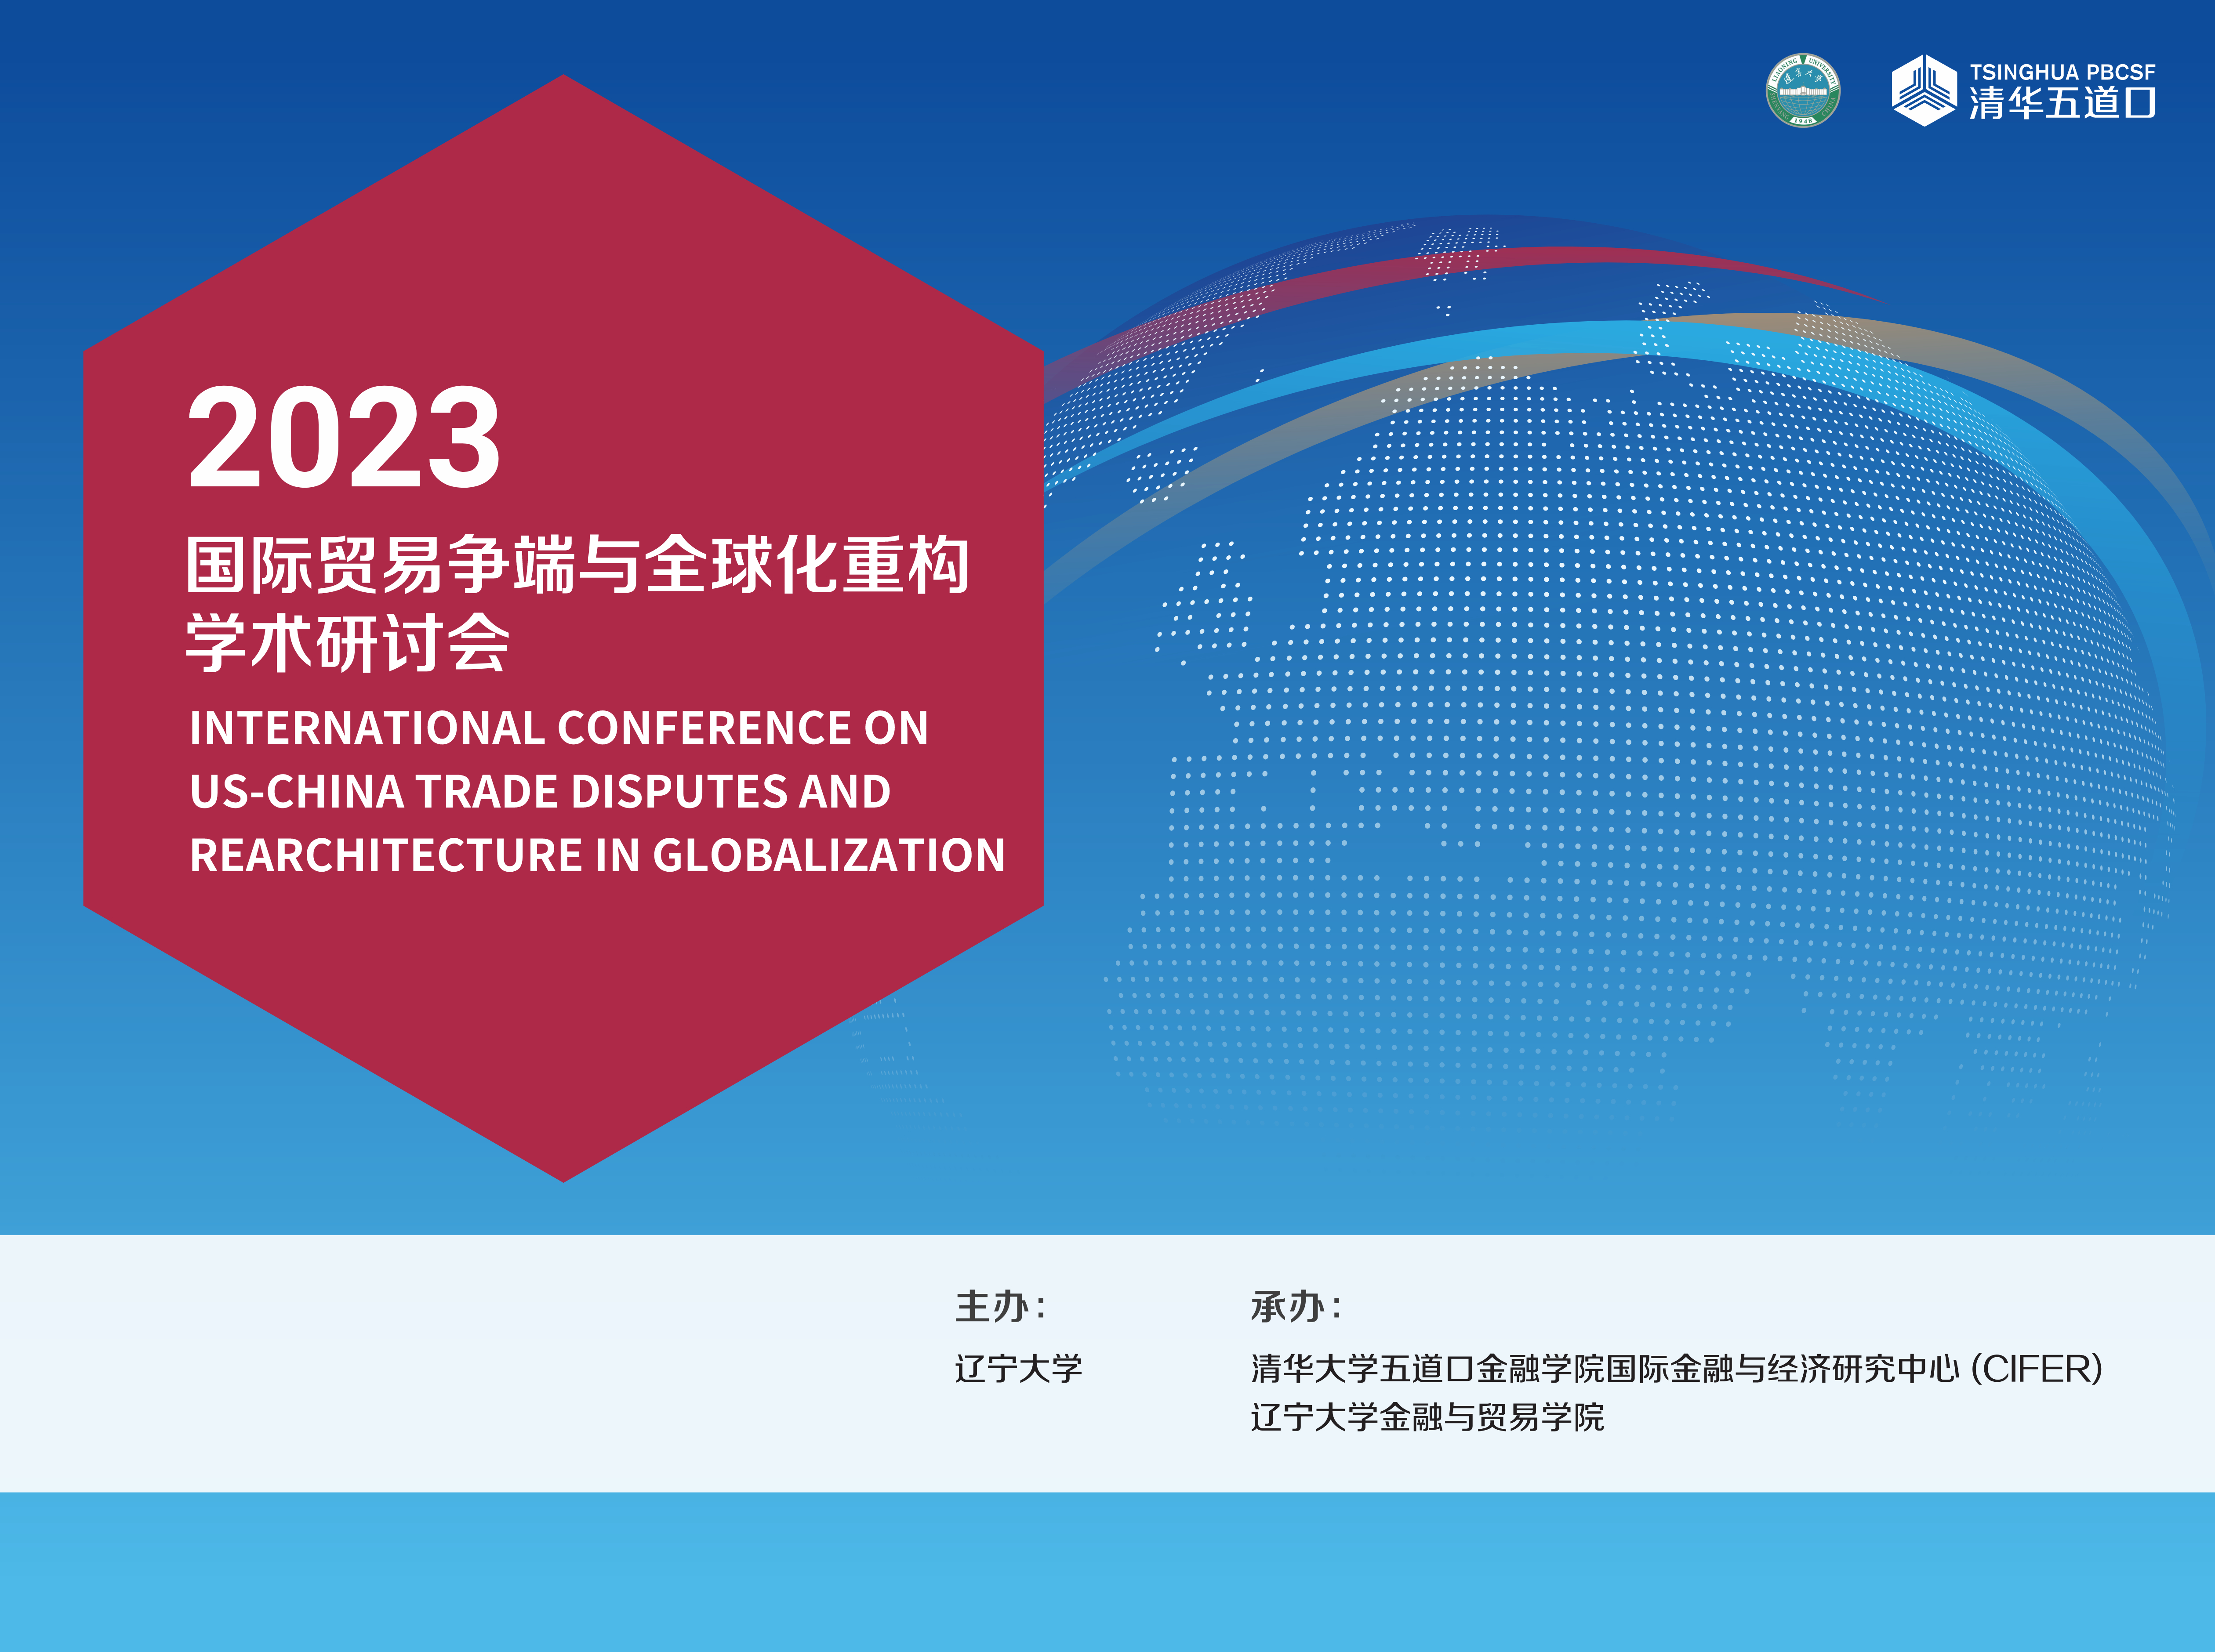 2023国际贸易争端与全球化重构学术研讨会